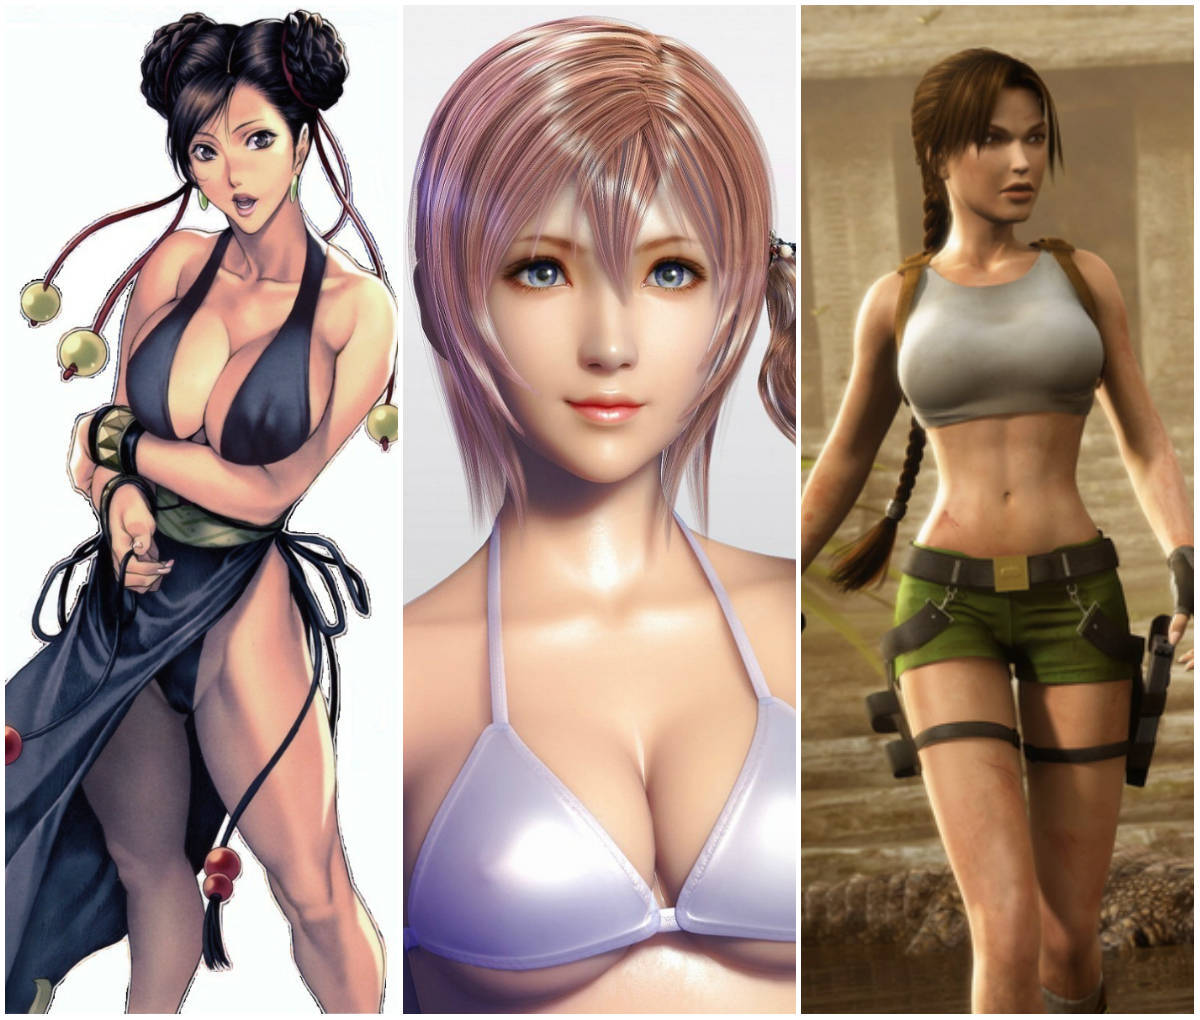 Portal BRX: Top 20 personagens femininas mais bonitas dos games